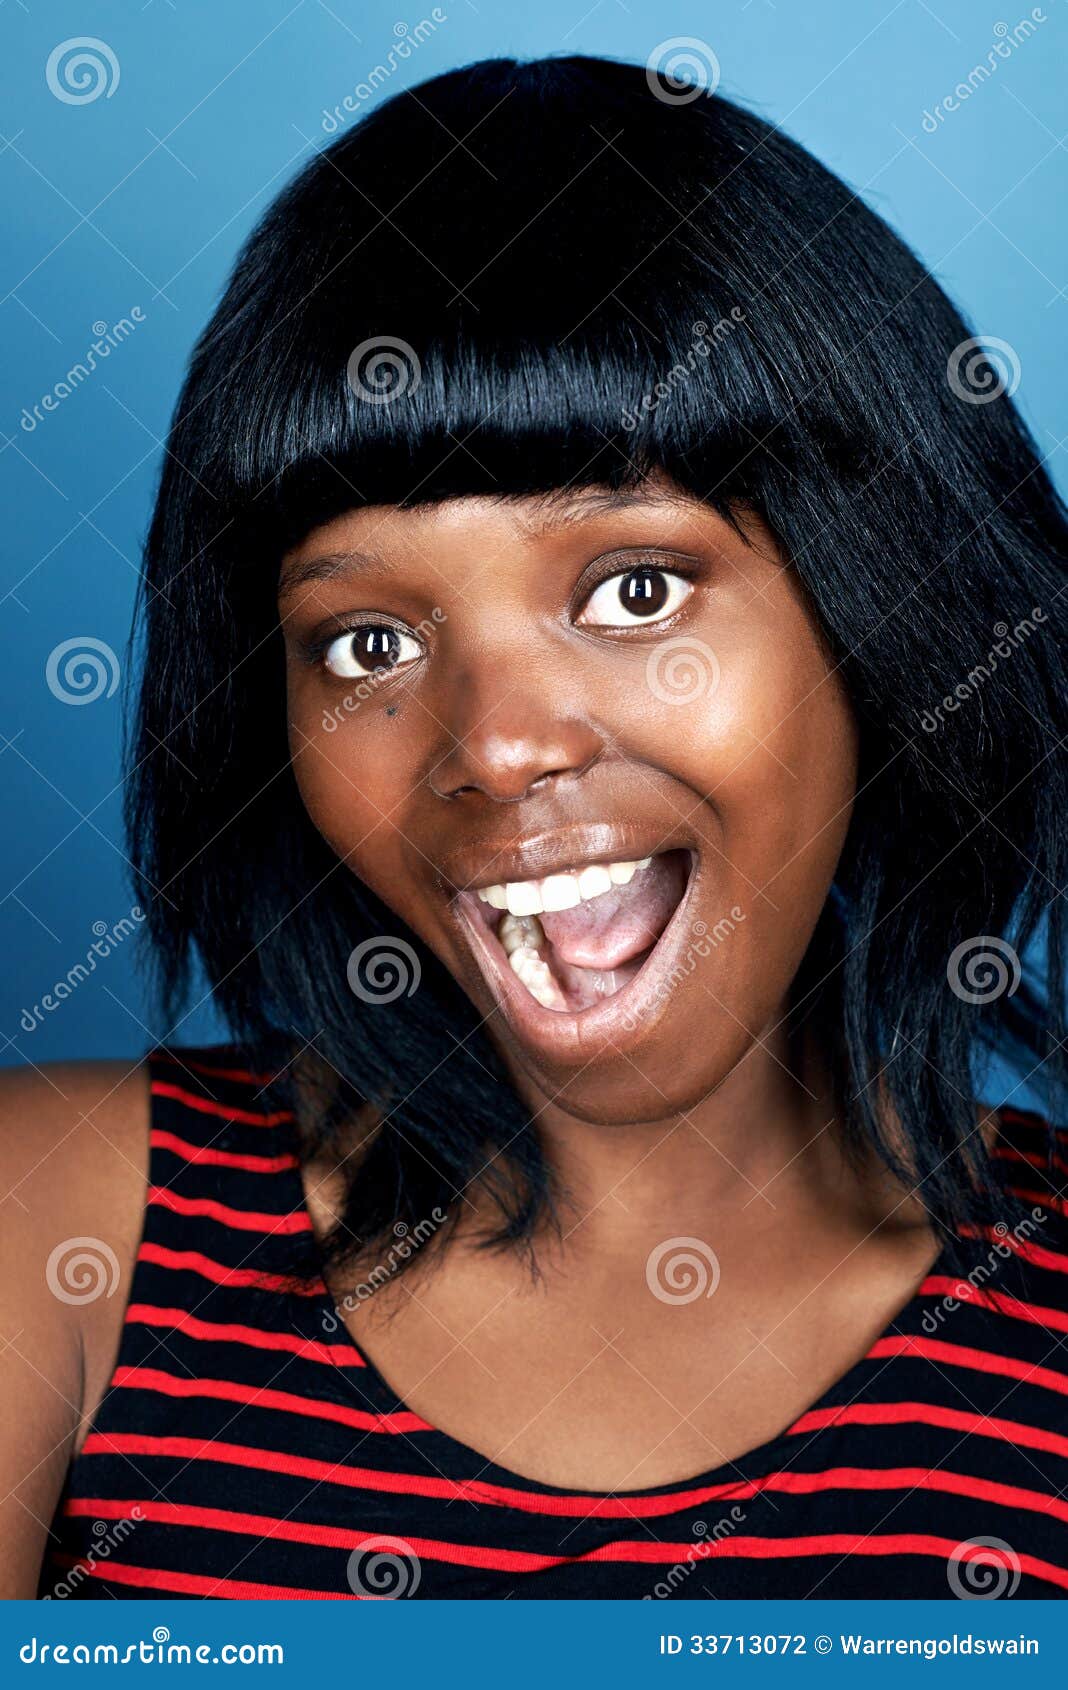 Funny Face African Woman Stock Photography | CartoonDealer.com #33713072